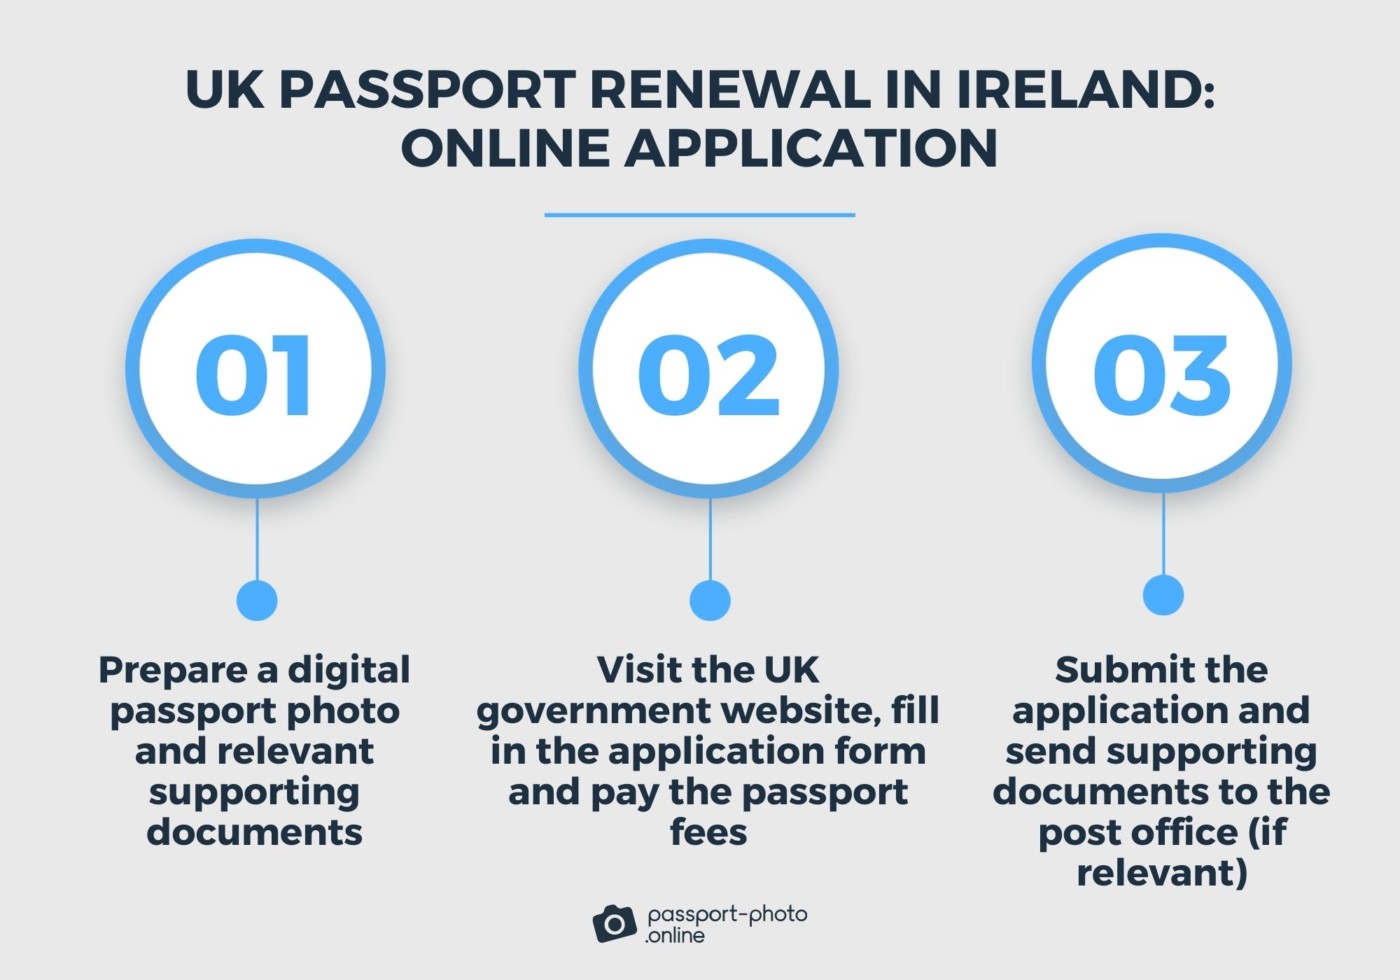 steps on renewing UK passport in Ireland online